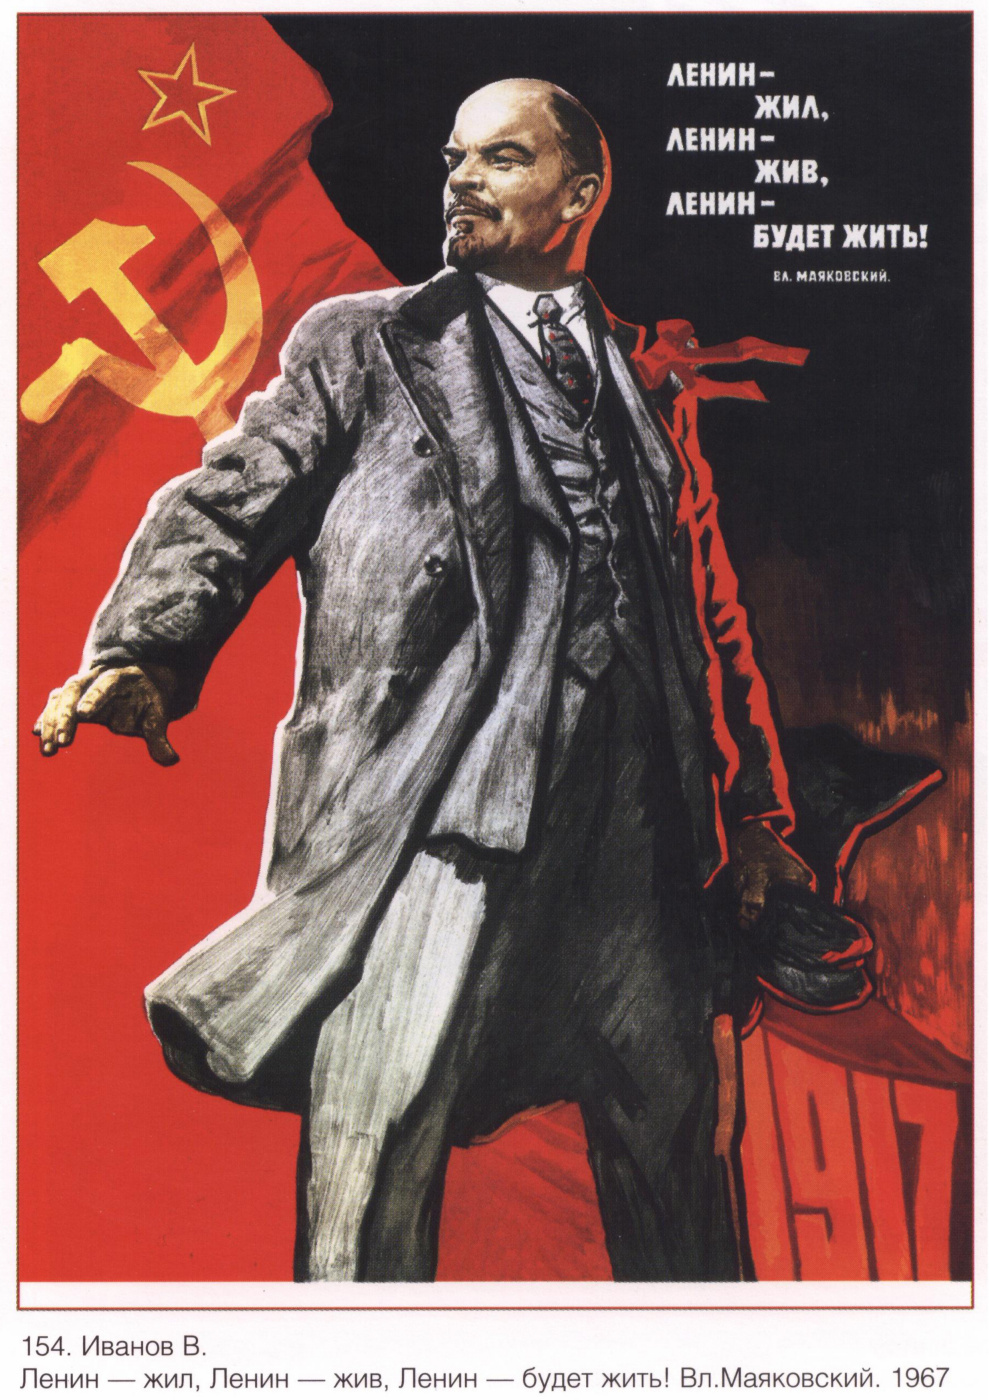 Posters USSR. Lenin lived, Lenin lives, Lenin will live